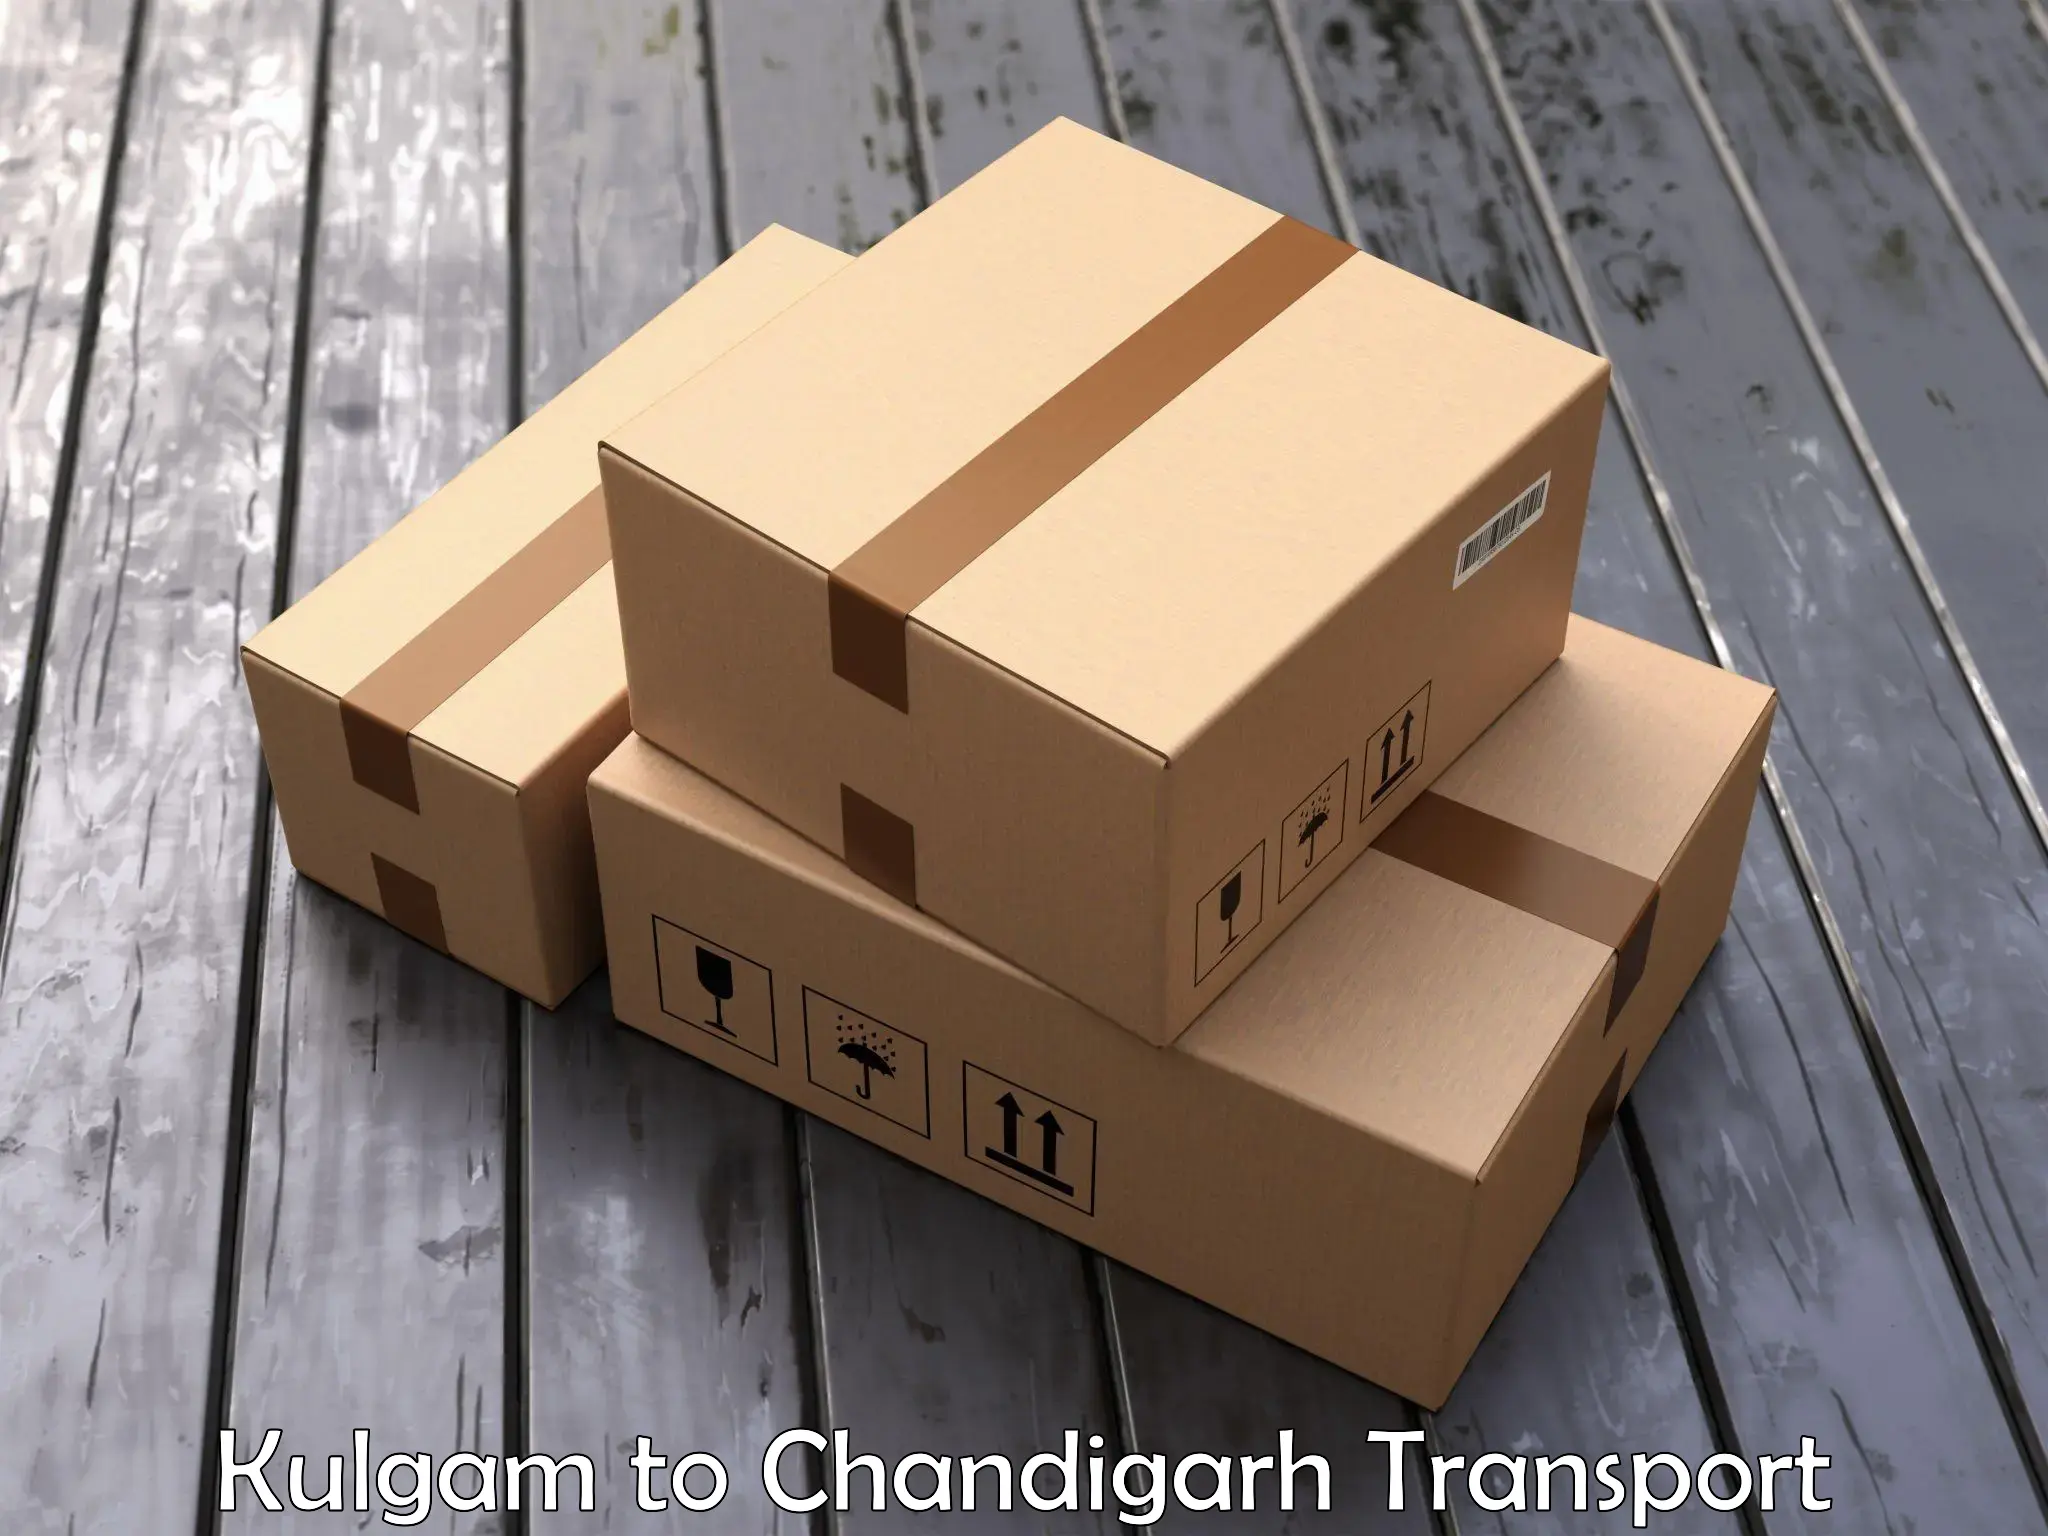 Truck transport companies in India Kulgam to Chandigarh